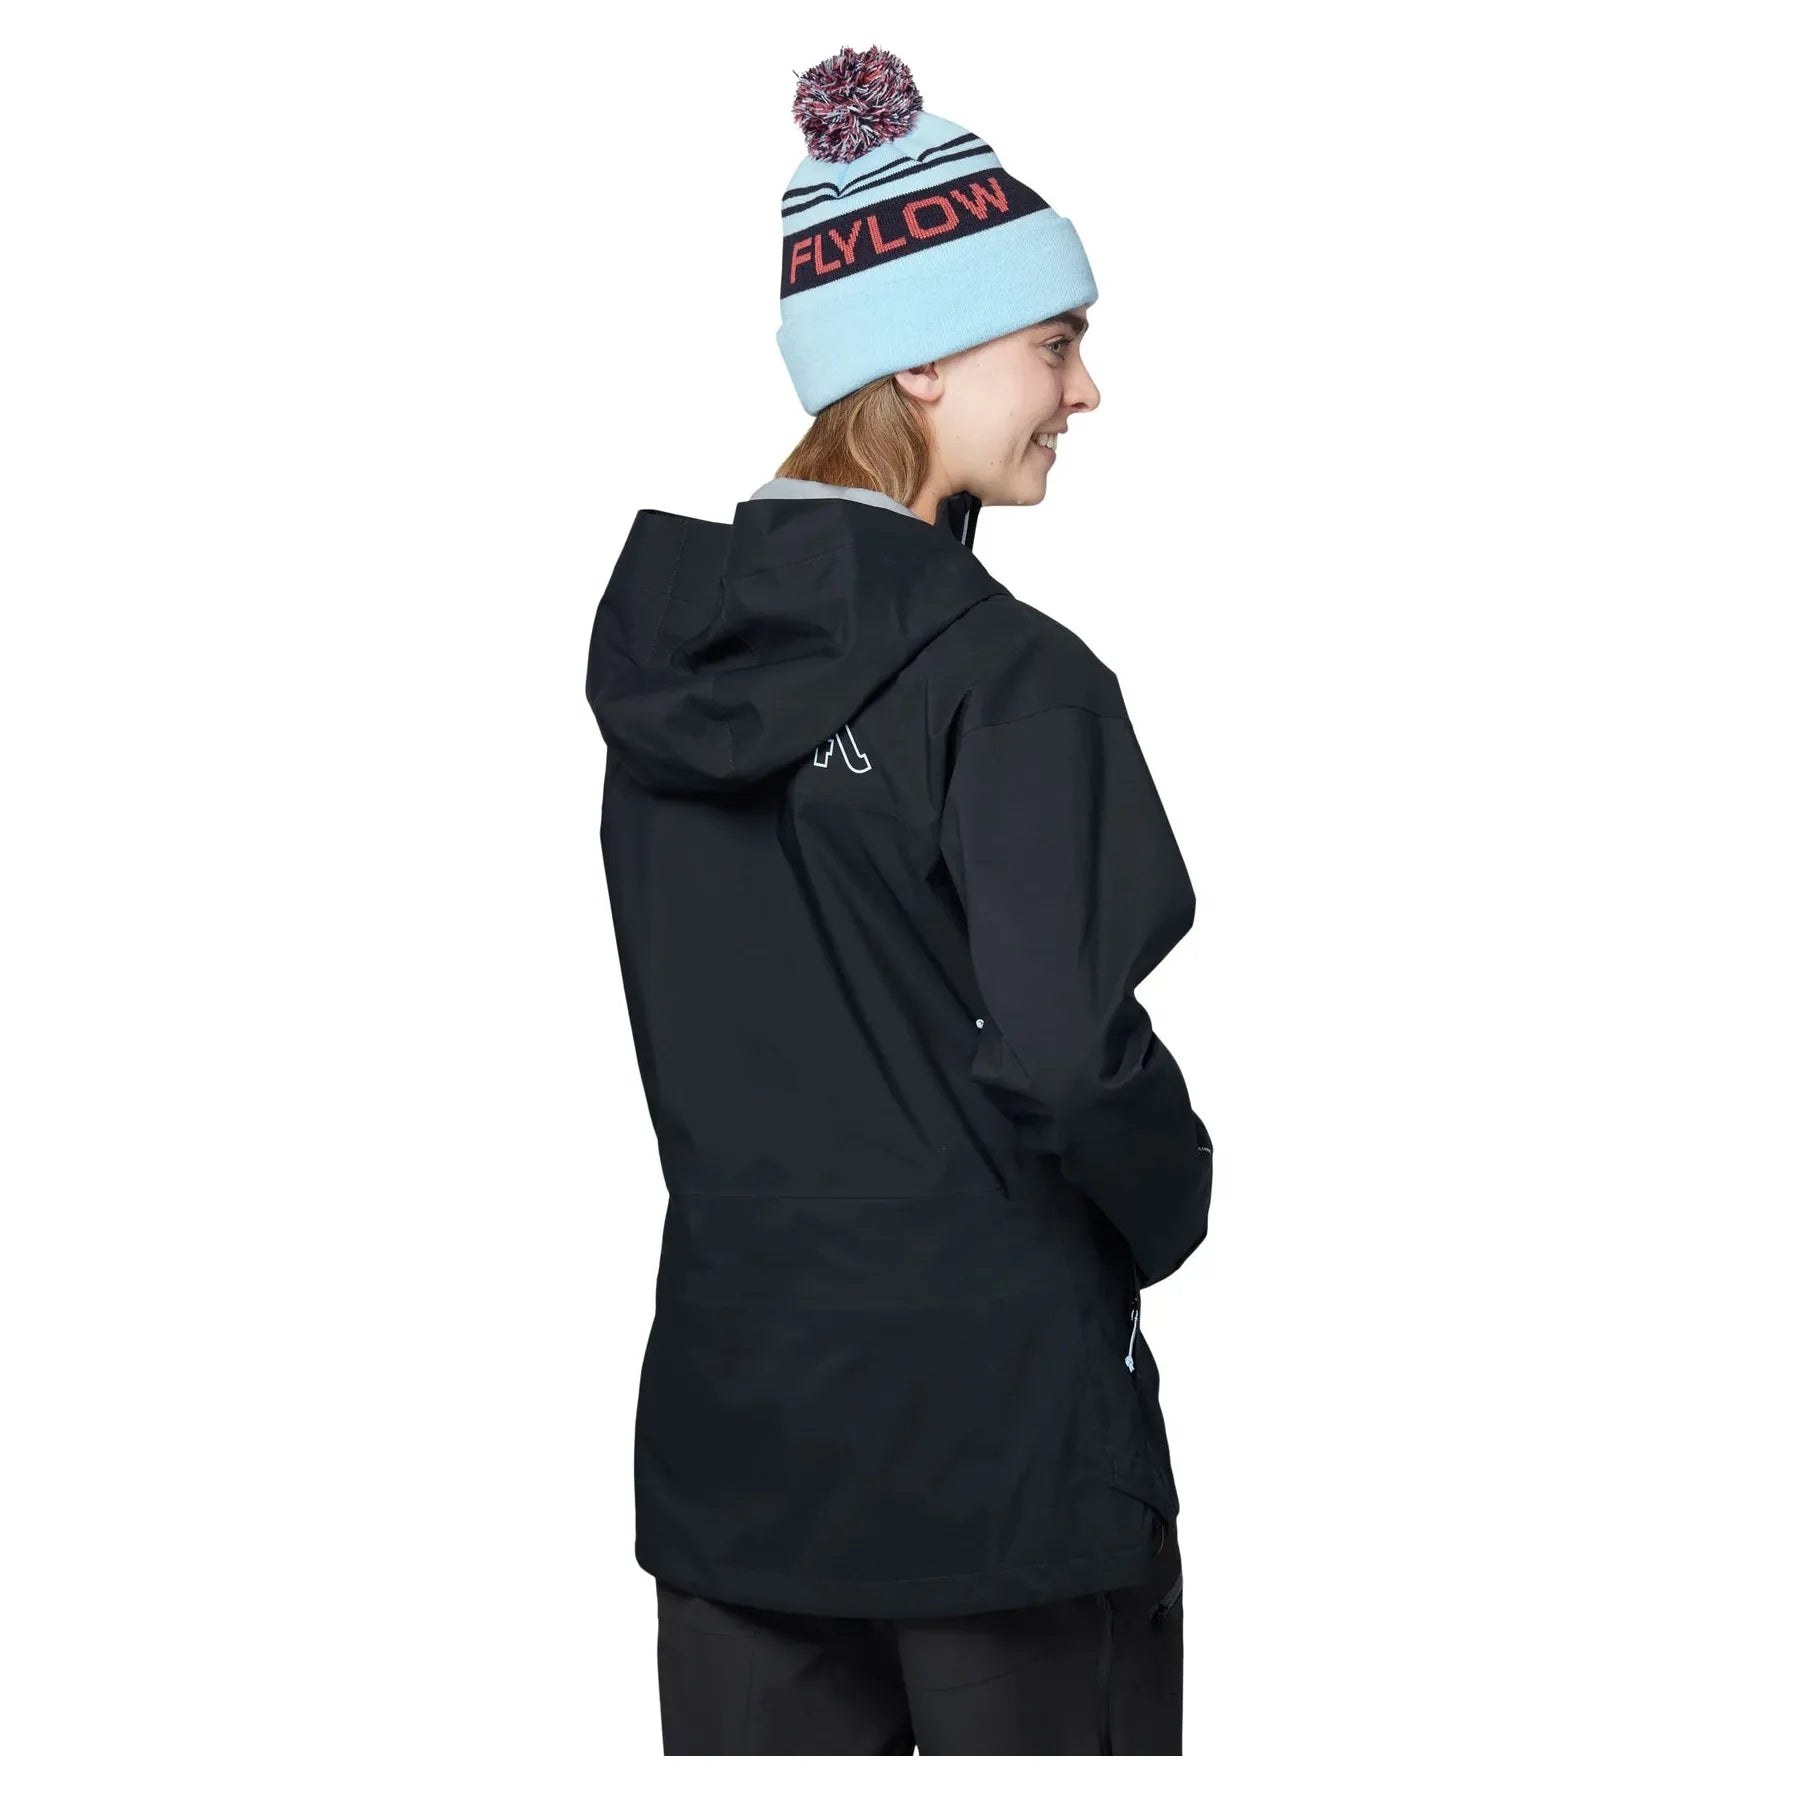 Manteau de Ski Imperméable Lucy 3L pour Femmes||Ski Jacket Lucy 3L for Women's